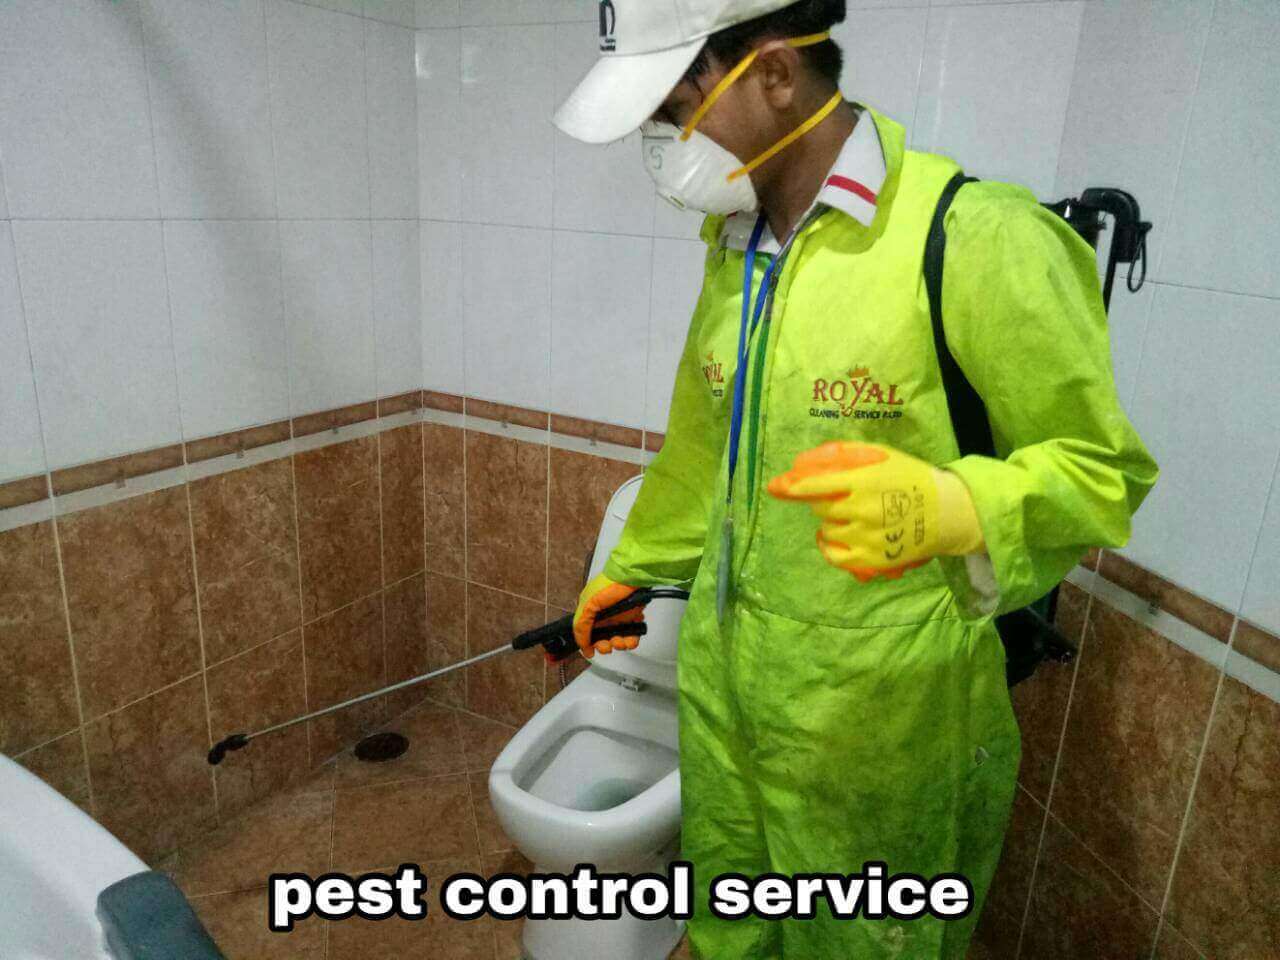 PEST CONTROL SERVICE